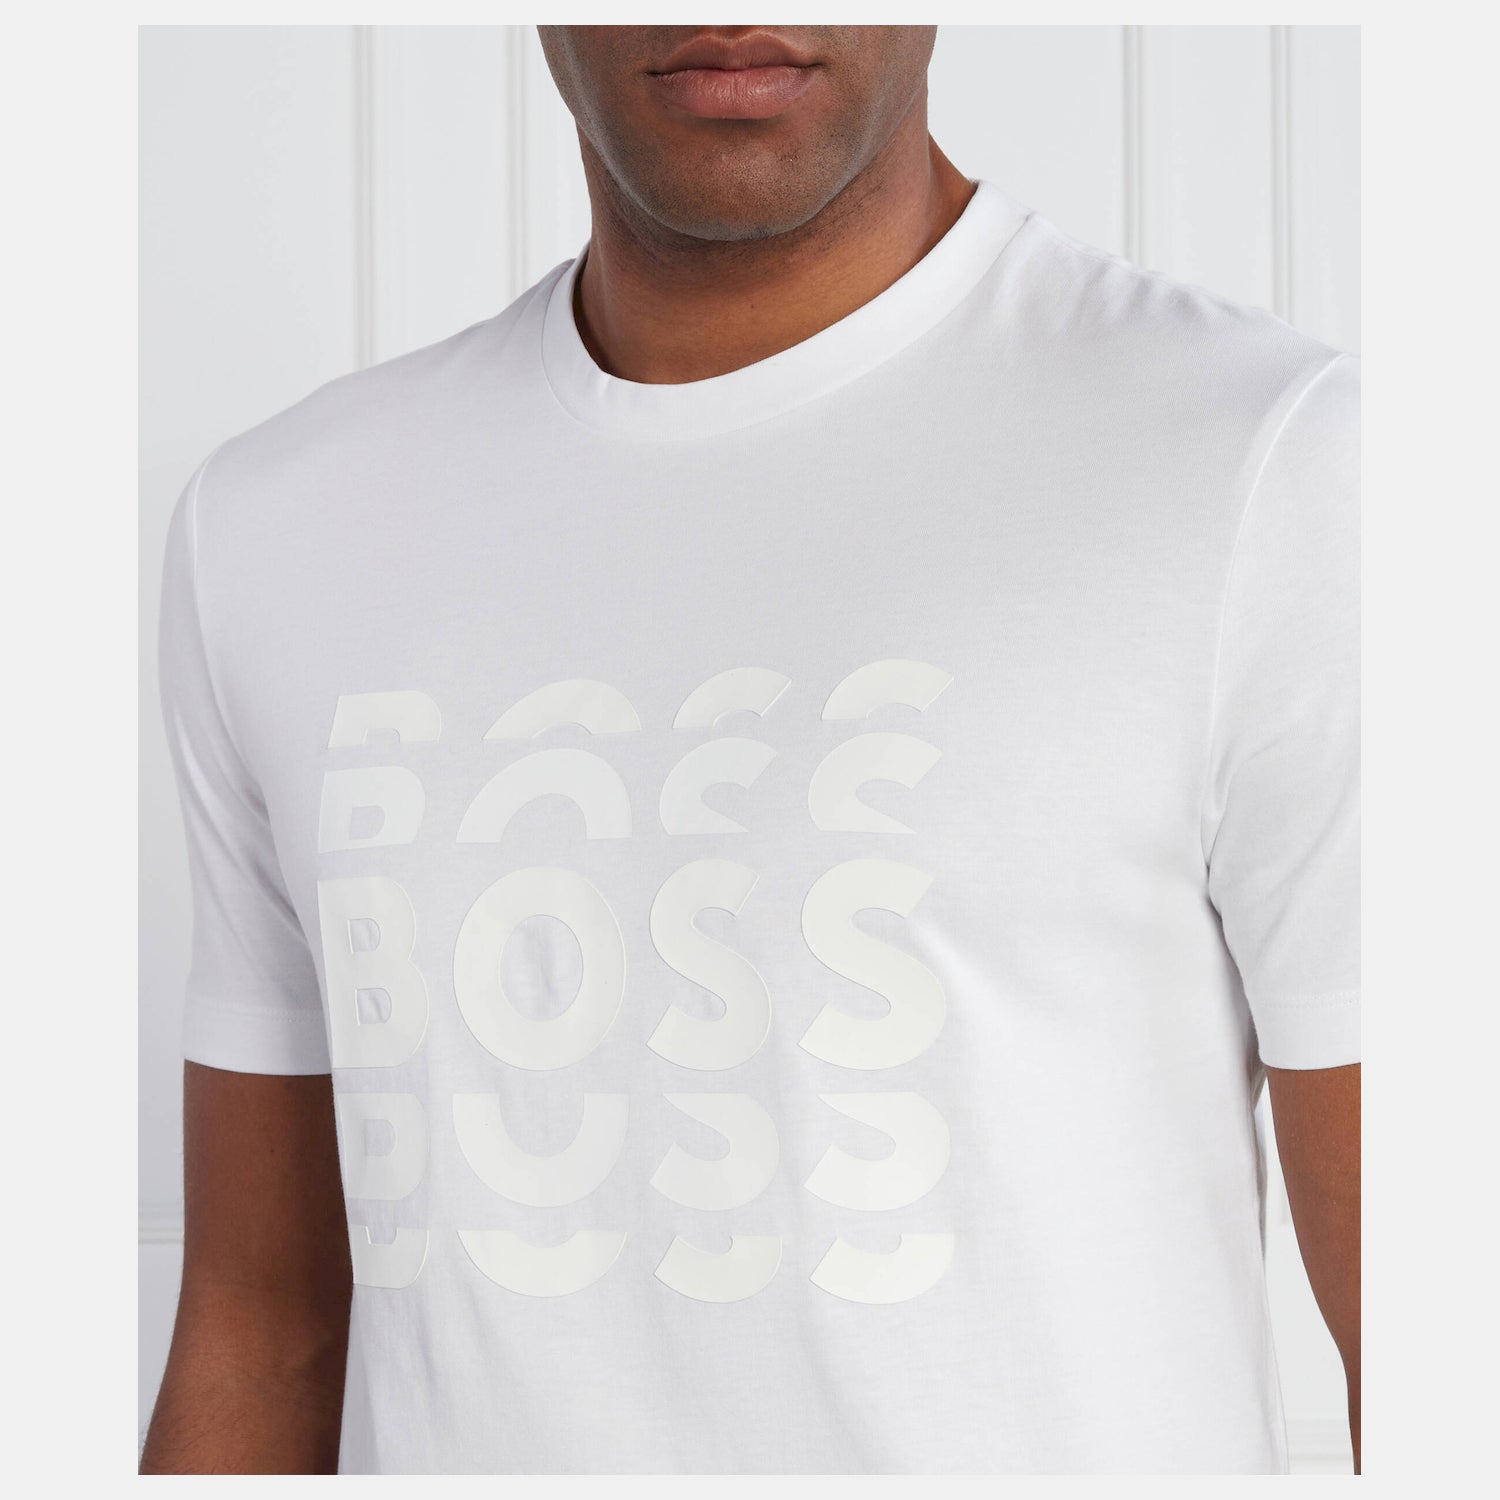 Boss T Shirt Tiburt414 White Branco_shot3